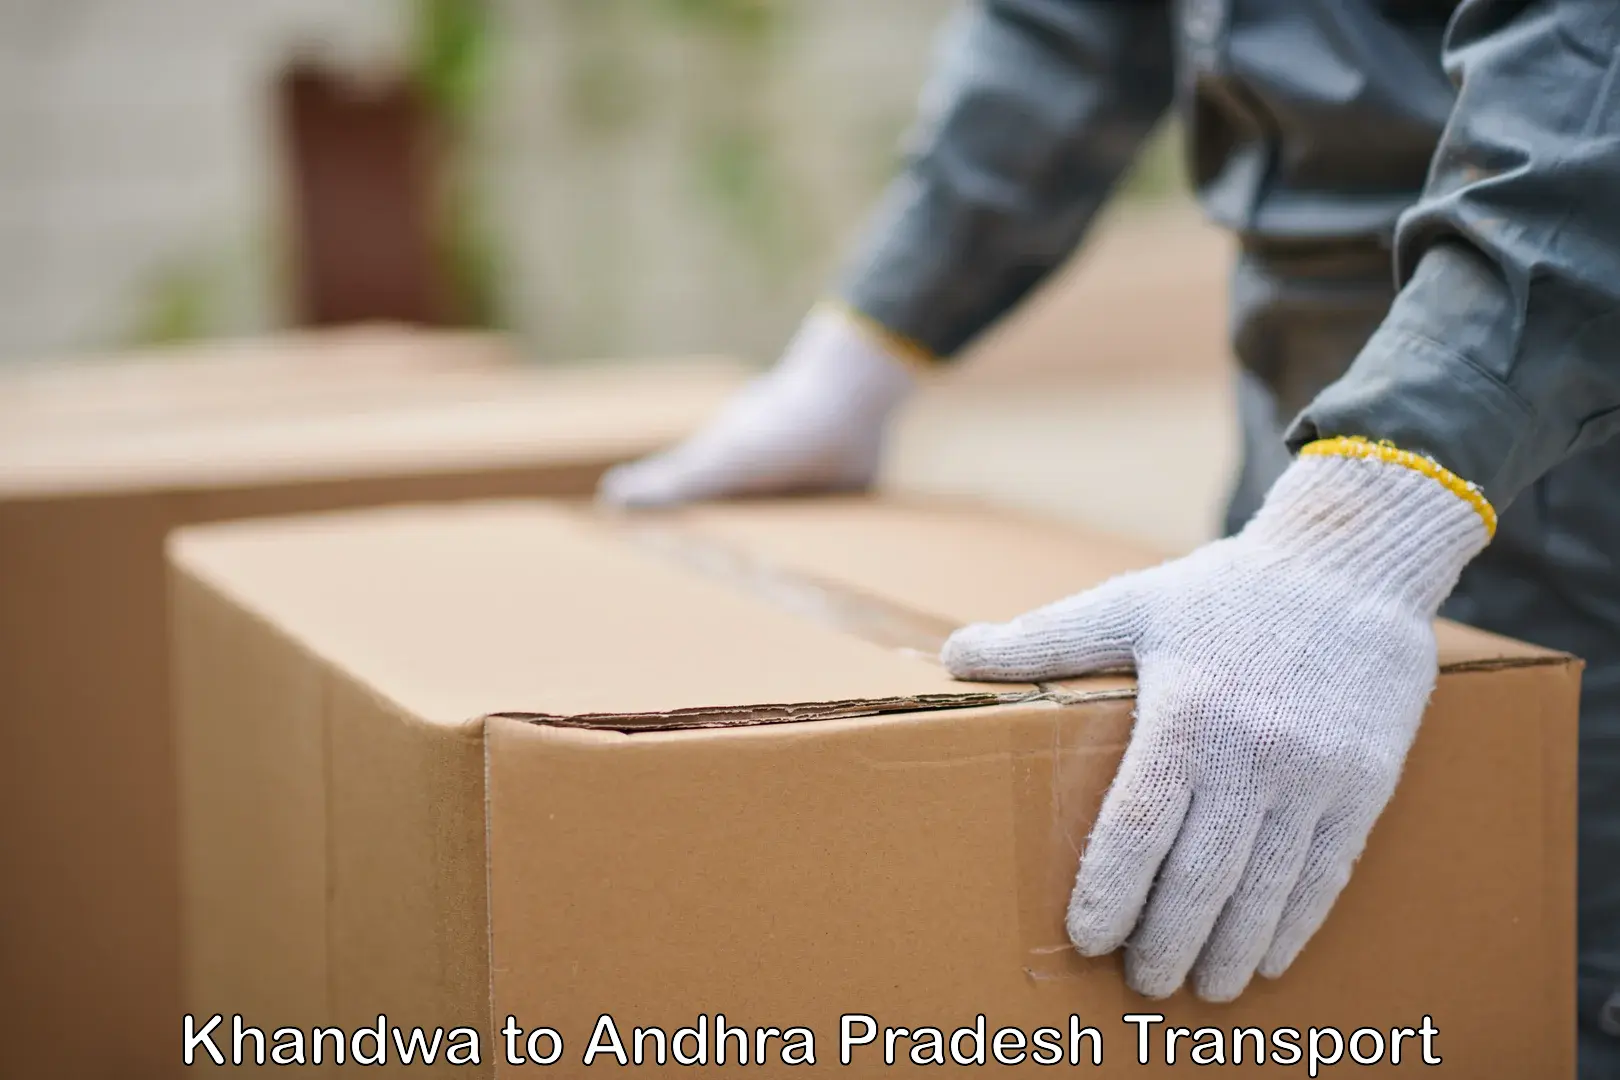 Pick up transport service Khandwa to Andhra Pradesh